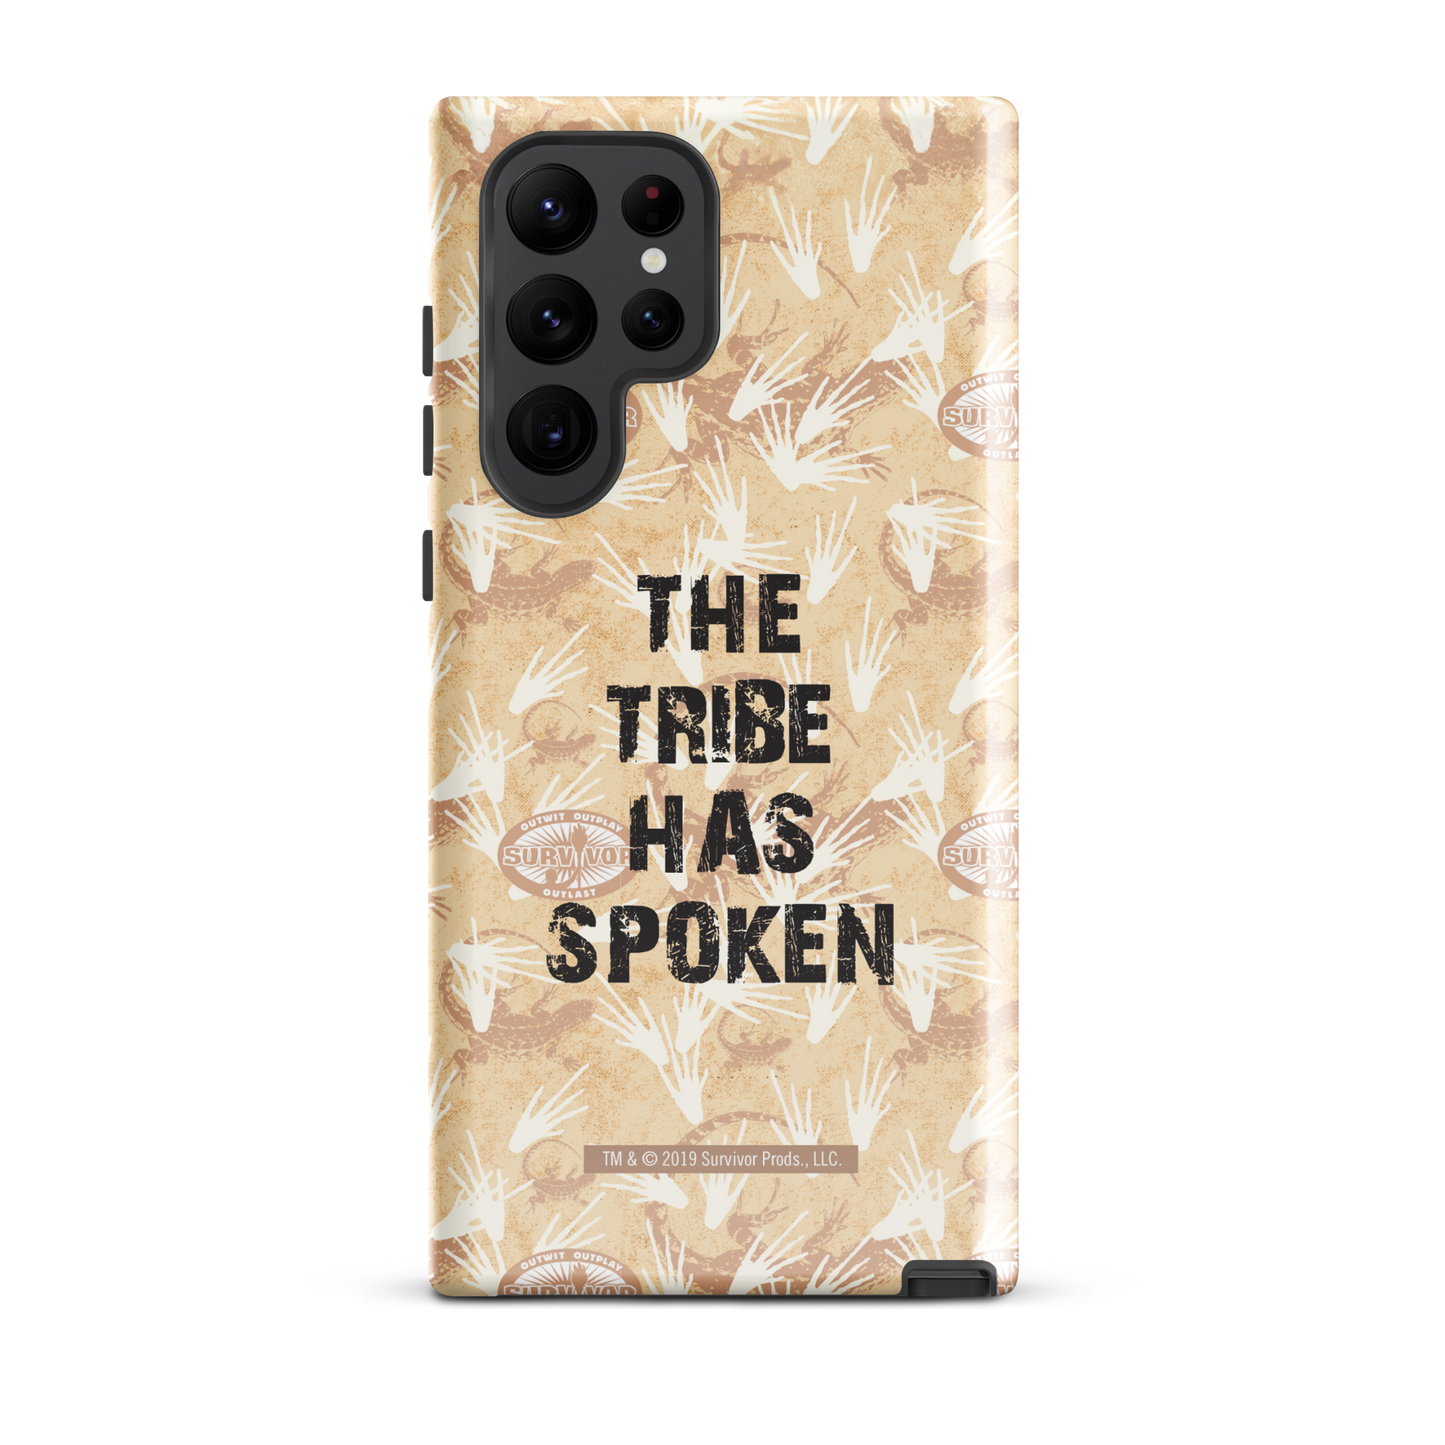 Survivor La tribu ha hablado Funda resistente para teléfono - Samsung